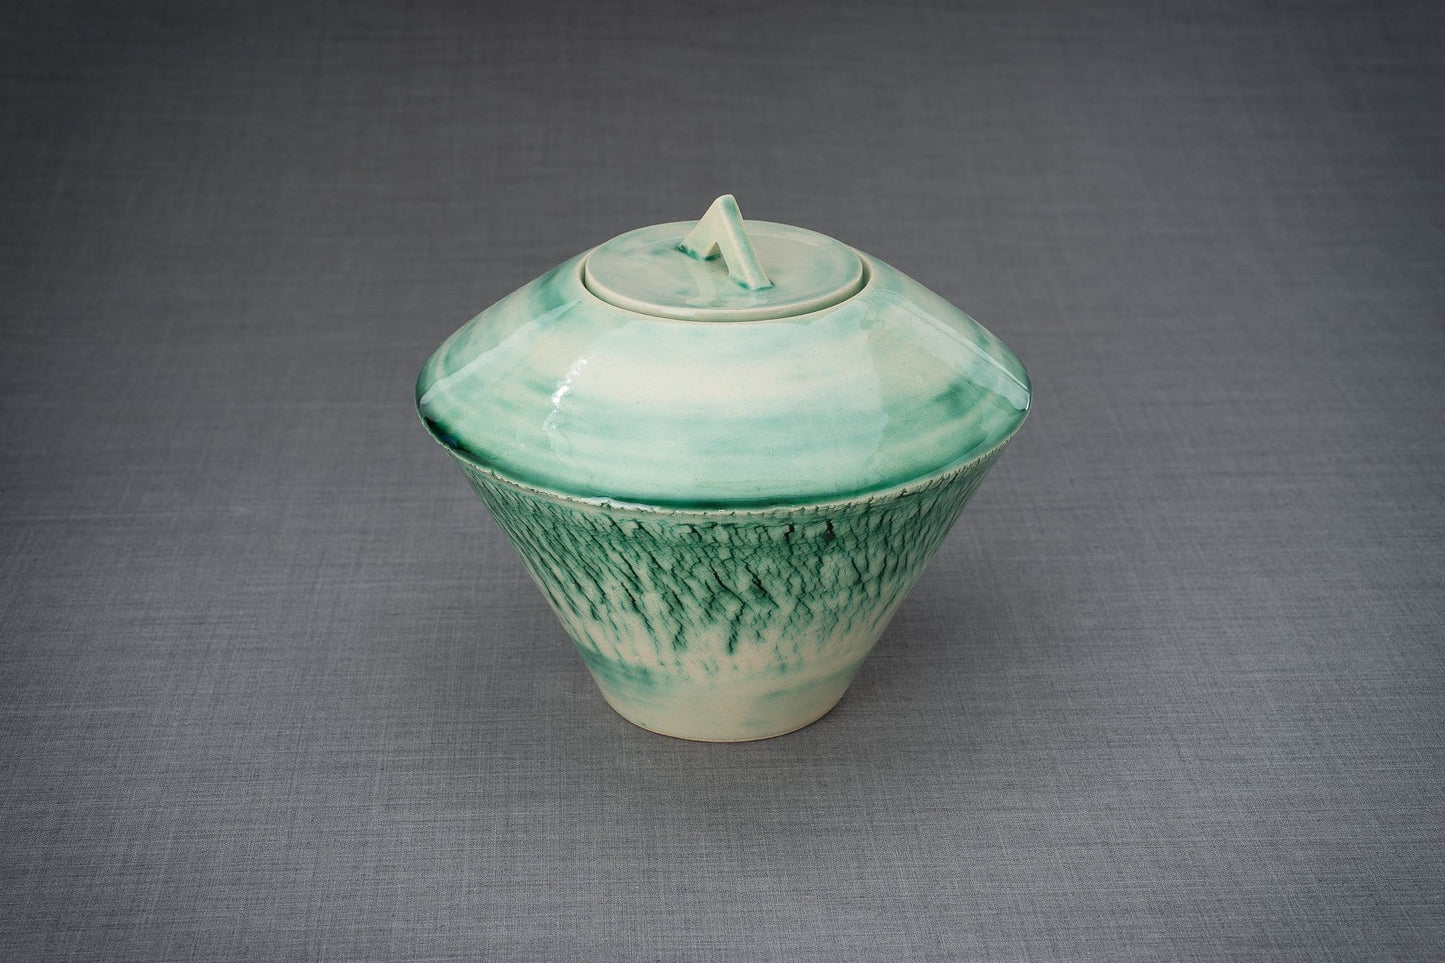 Urna artística de cerámica para cenizas - hecha a mano en un torno de cerámica por Pulvis Art Urns